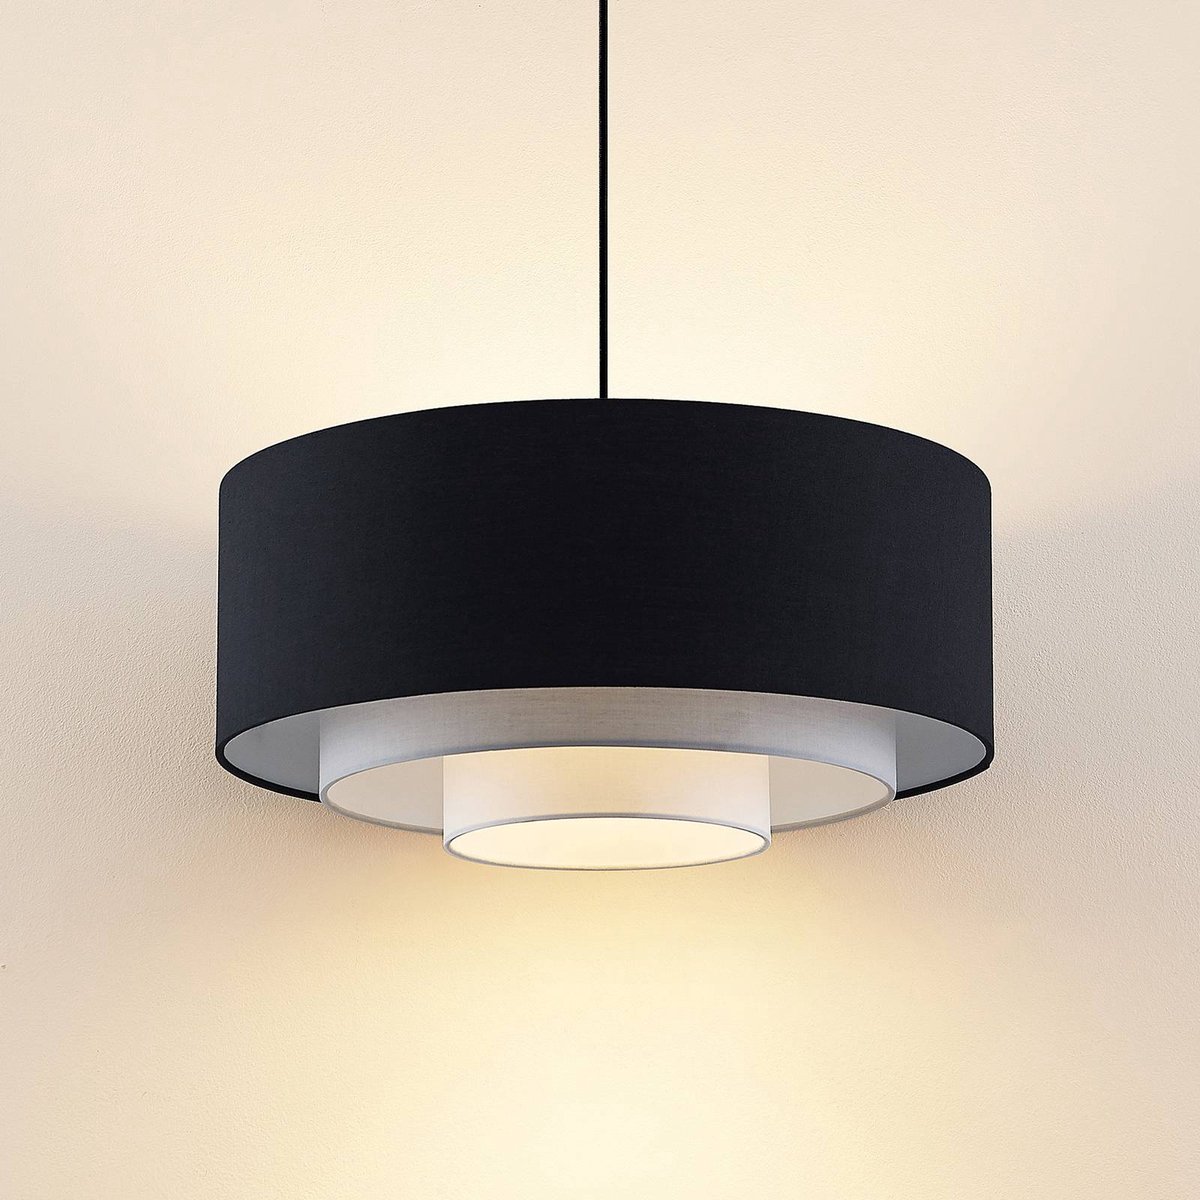 Lindby - Hanglamp - 1licht - stof, metaal - H: 23 cm - E27 - zwart, grijs, wit, gesatineerd nikkel